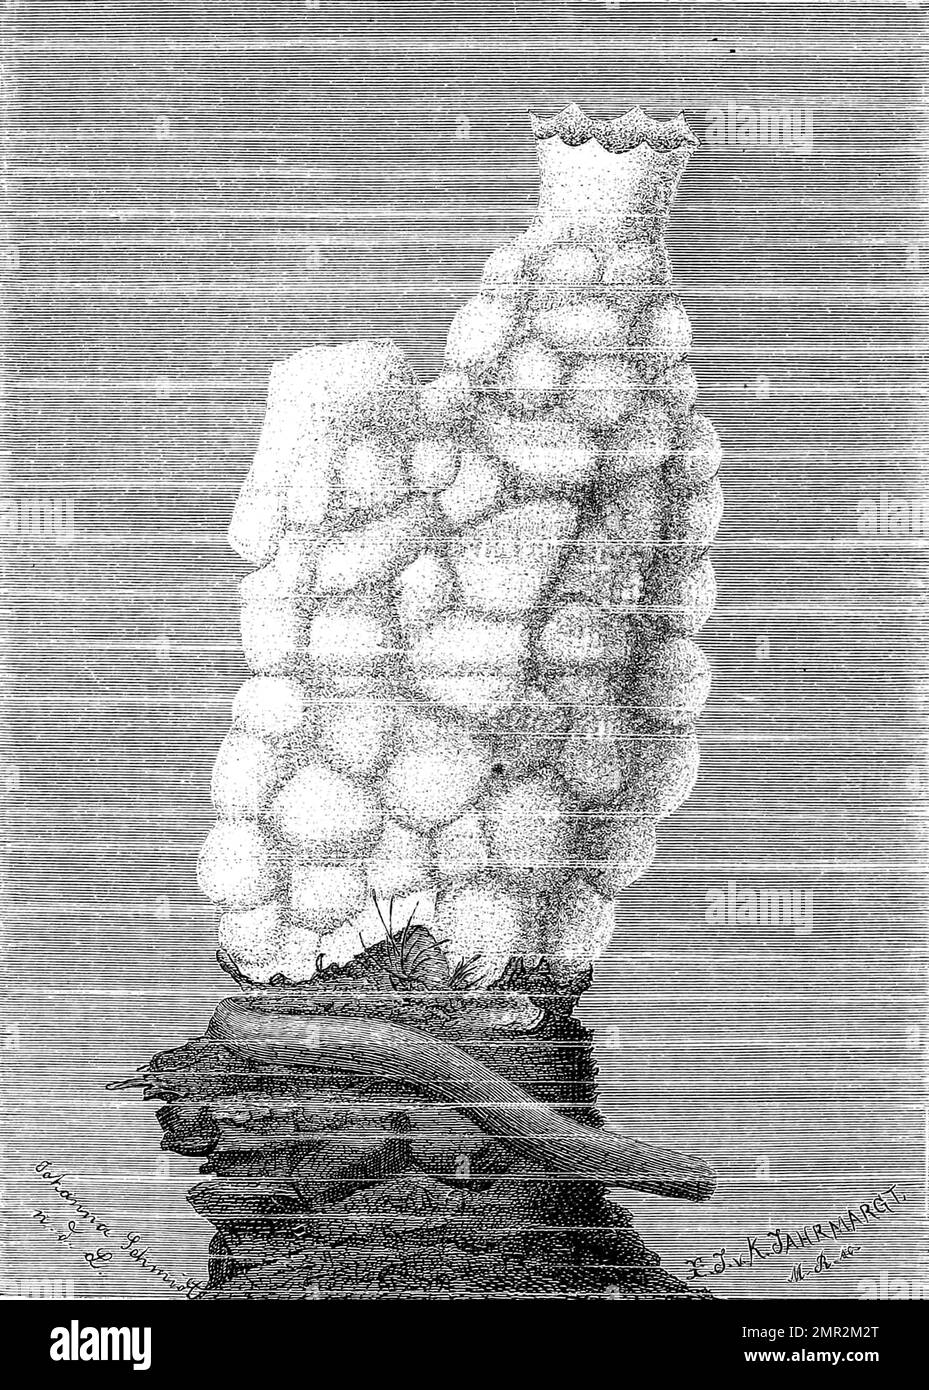 Phallusia mamillaris, a solitary marine tunicate of the ascidian class found in the eastern Atlantic Ocean and the Mediterranean Sea, Historisch, digital restaurierte Reproduktion von einer Vorlage aus dem 19. Jahrhundert Stock Photo